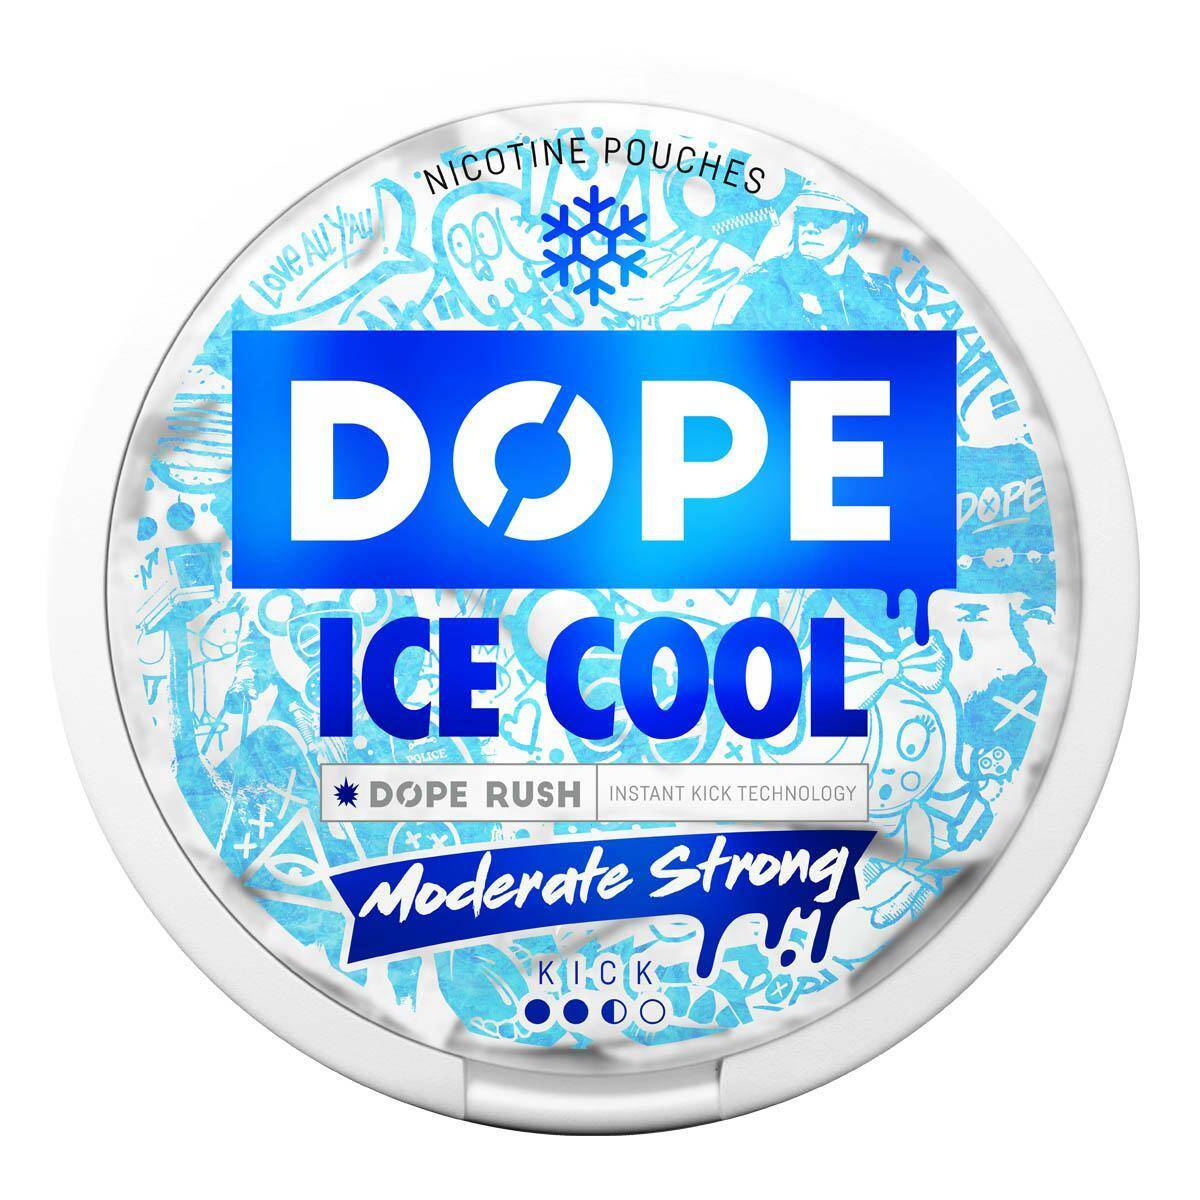 SNUS - Saszetki nikotynowe DOPE - Ice Cool 16mg/g (Zdjęcie 1)